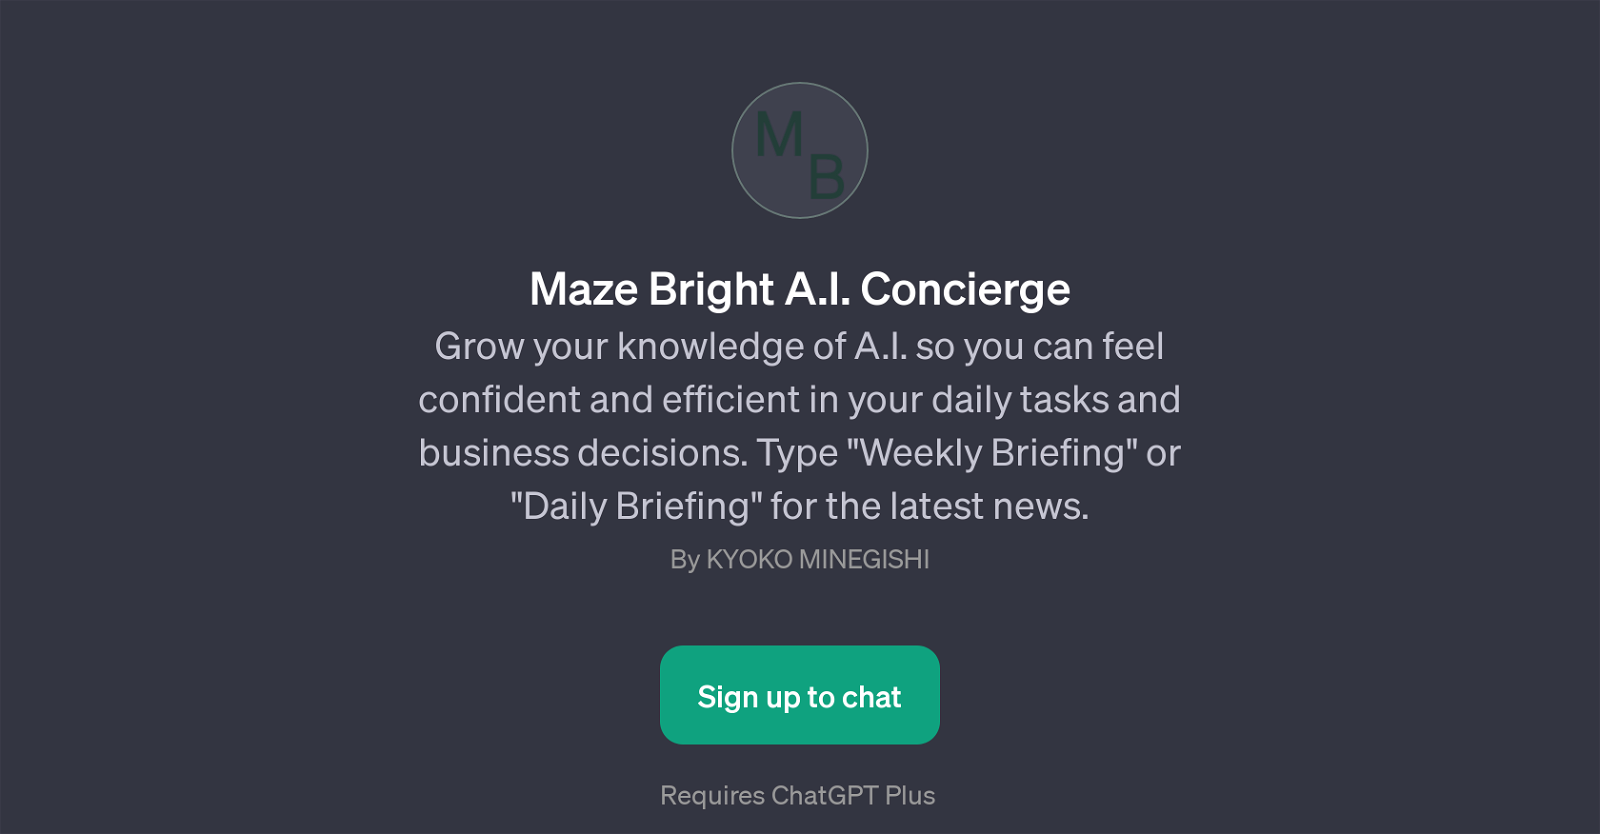 Maze Bright A.I. Concierge website